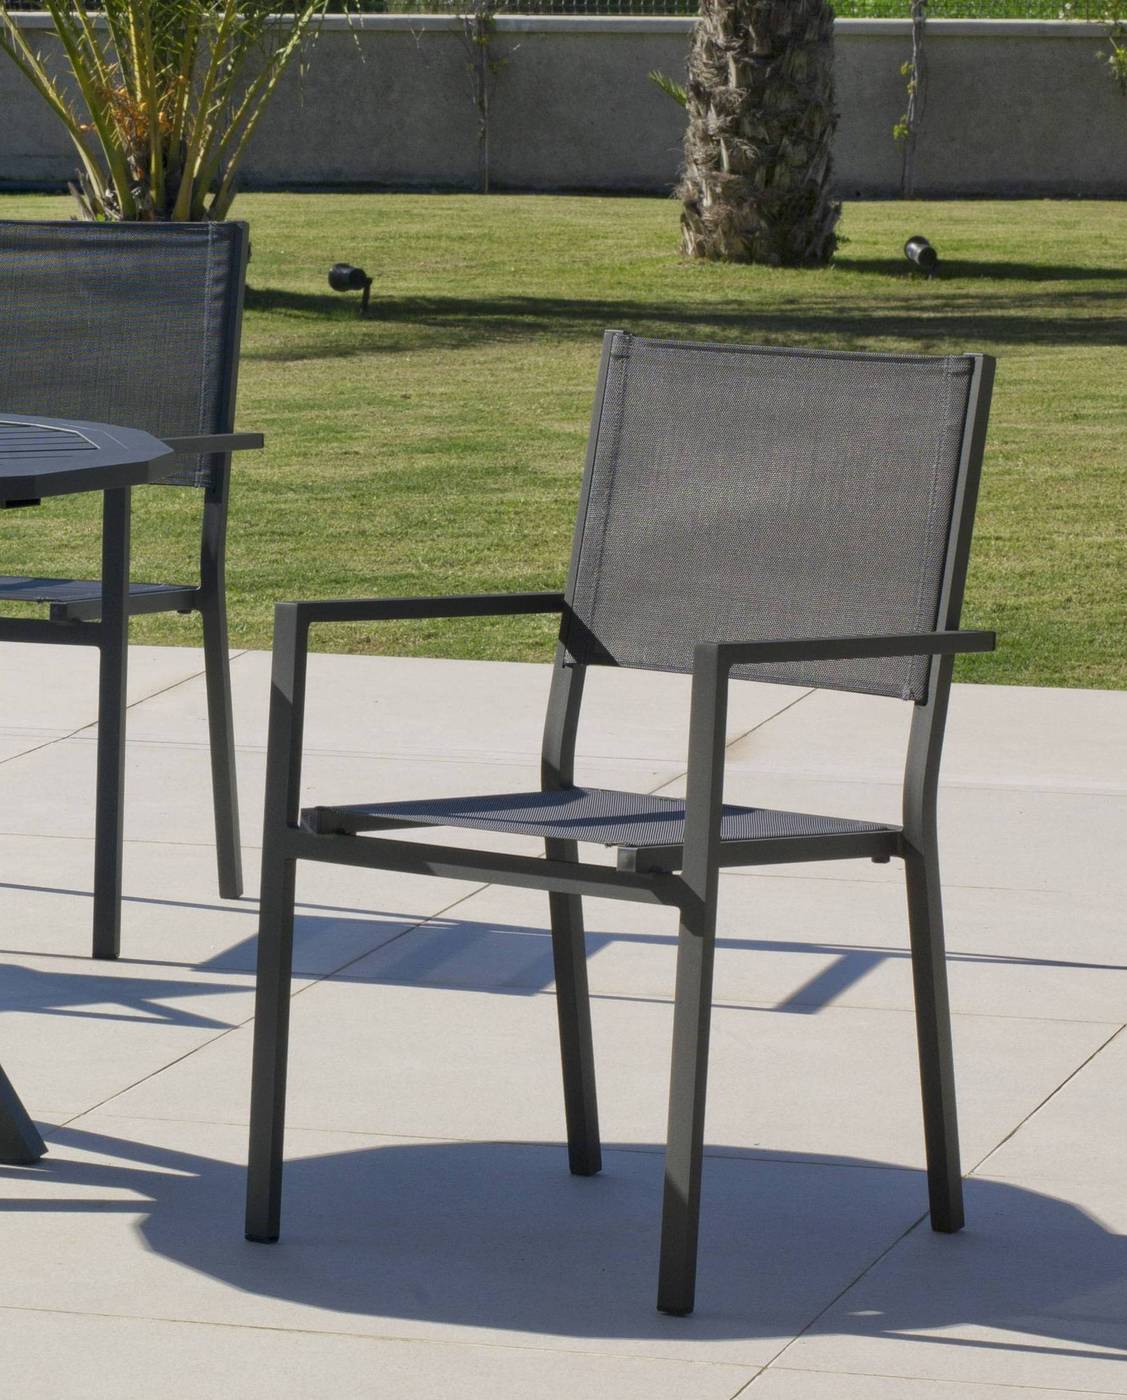 Set Aluminio Melea-Córcega 80-4 - Conjunto aluminio para jardín: Mesa cuadrada de 80 cm. + 4 sillones de aluminio y textilen. Disponible en color blanco, antracita, champagne, plata o marrón.